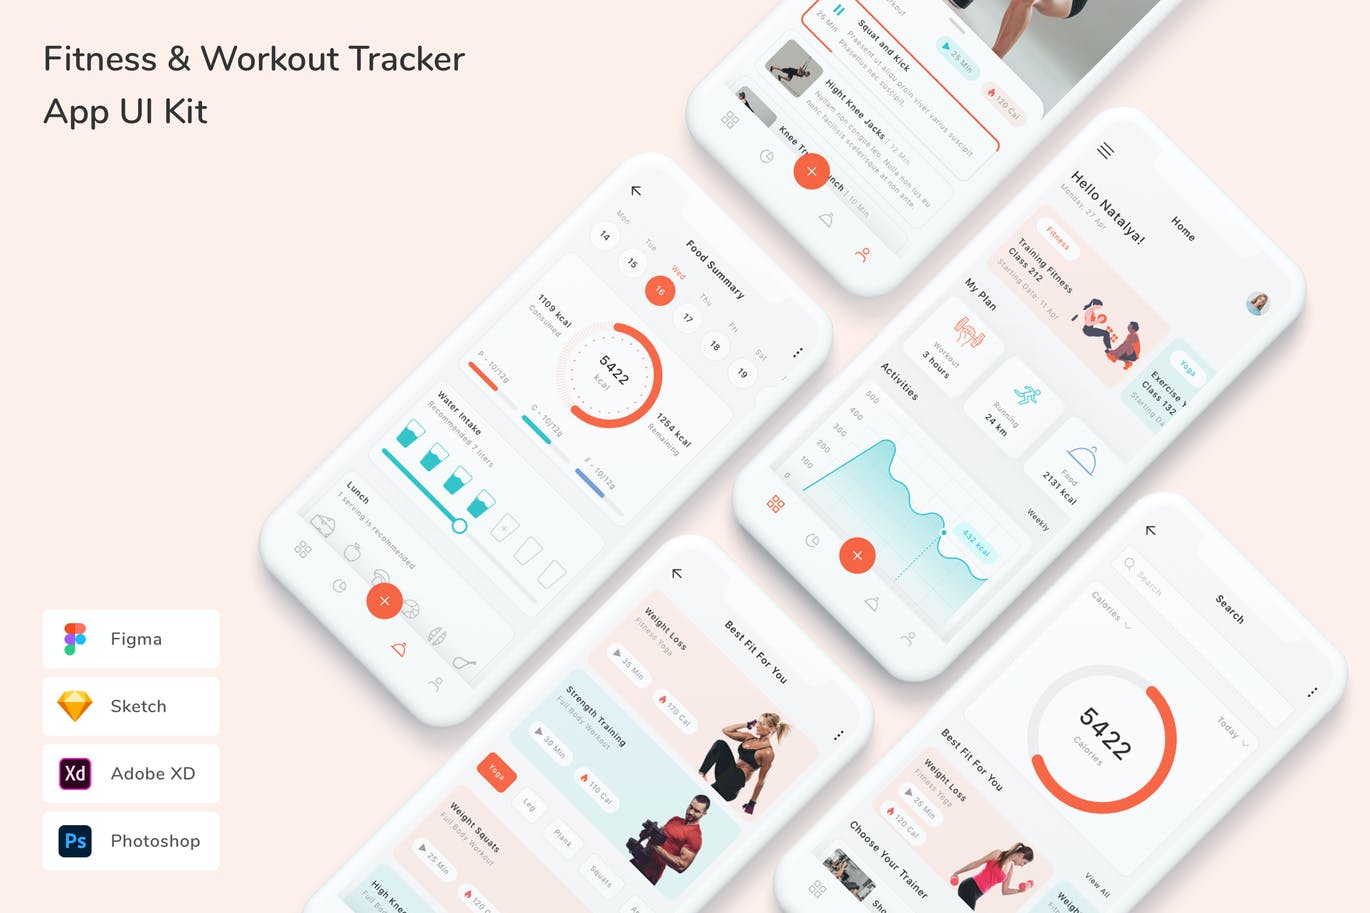 健身与训练跟踪器 App UI Kit (FIG,PSD,SKETCH,XD)